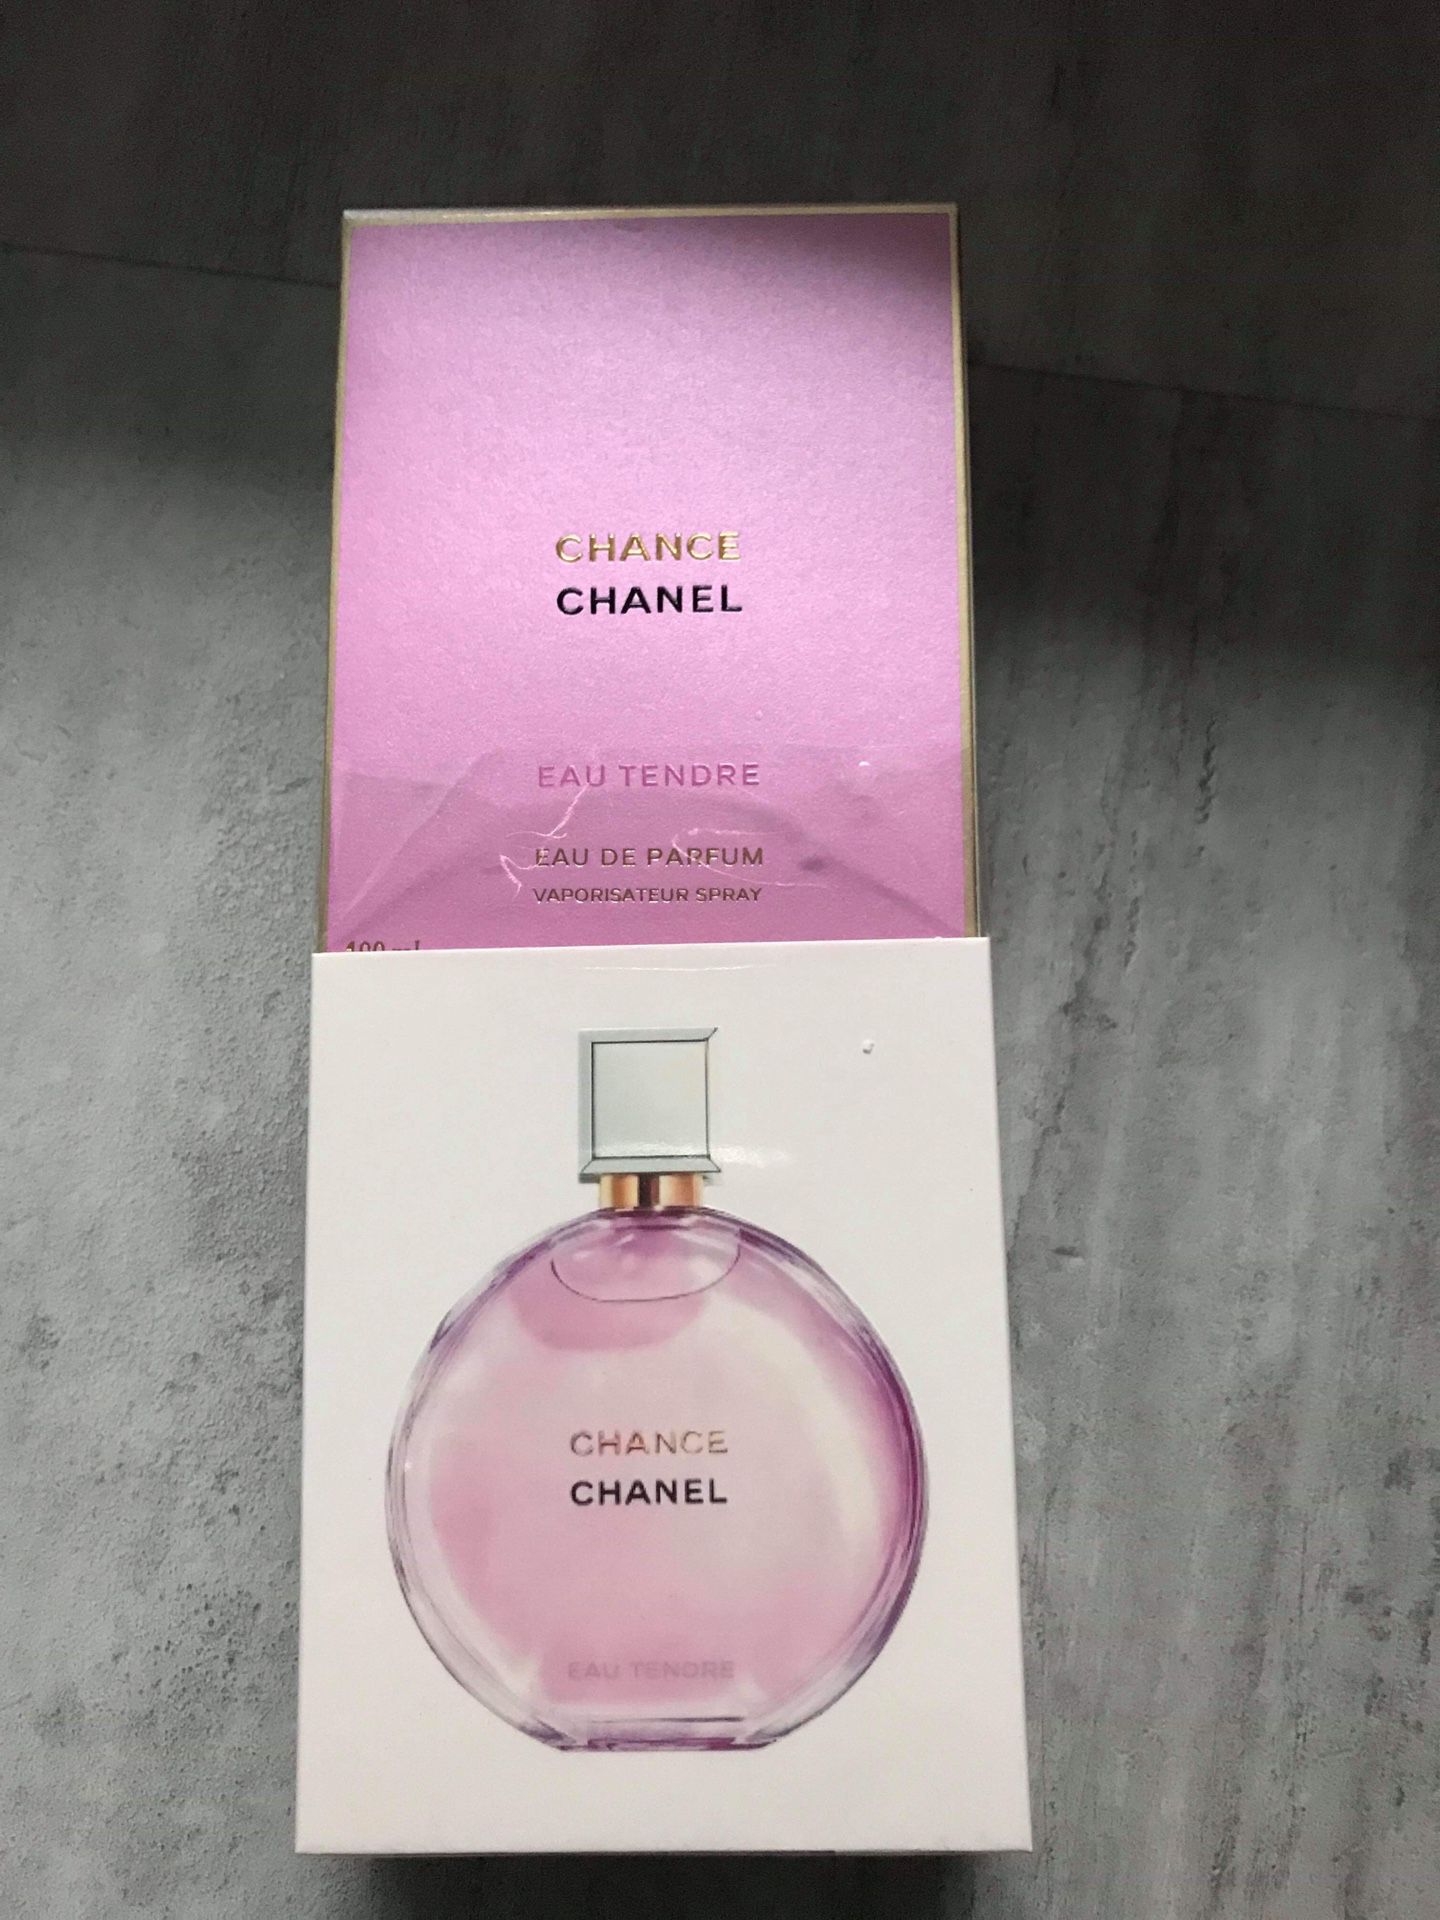 Chance chanel eau tendre 2019 perfume